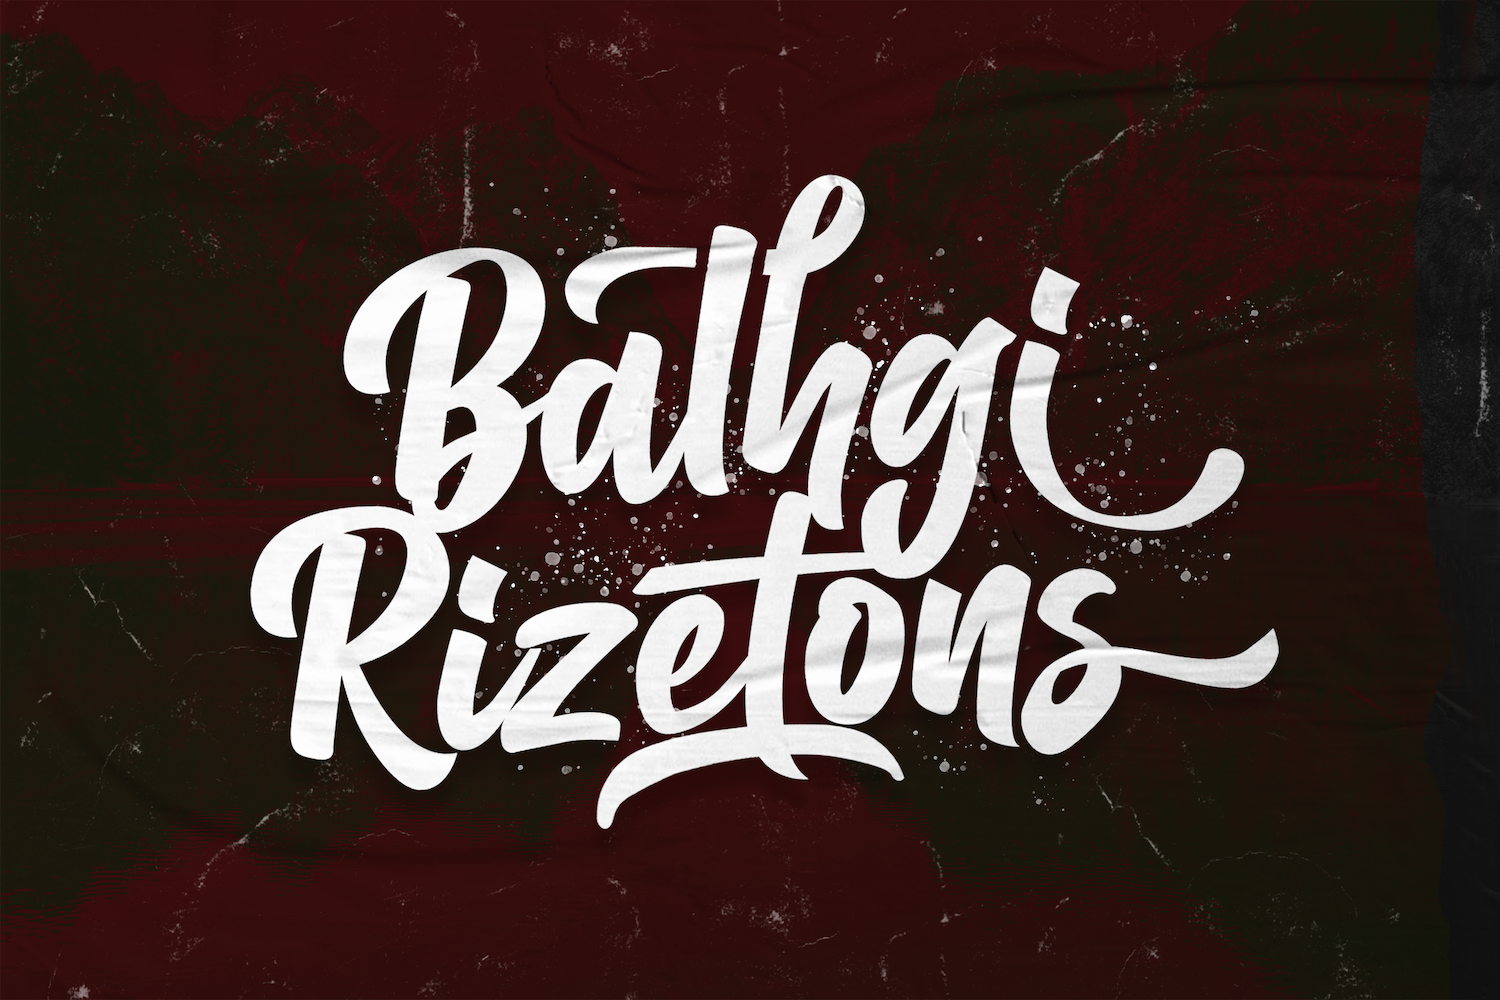 Balhgi Rizetons - Bold Cursive Font